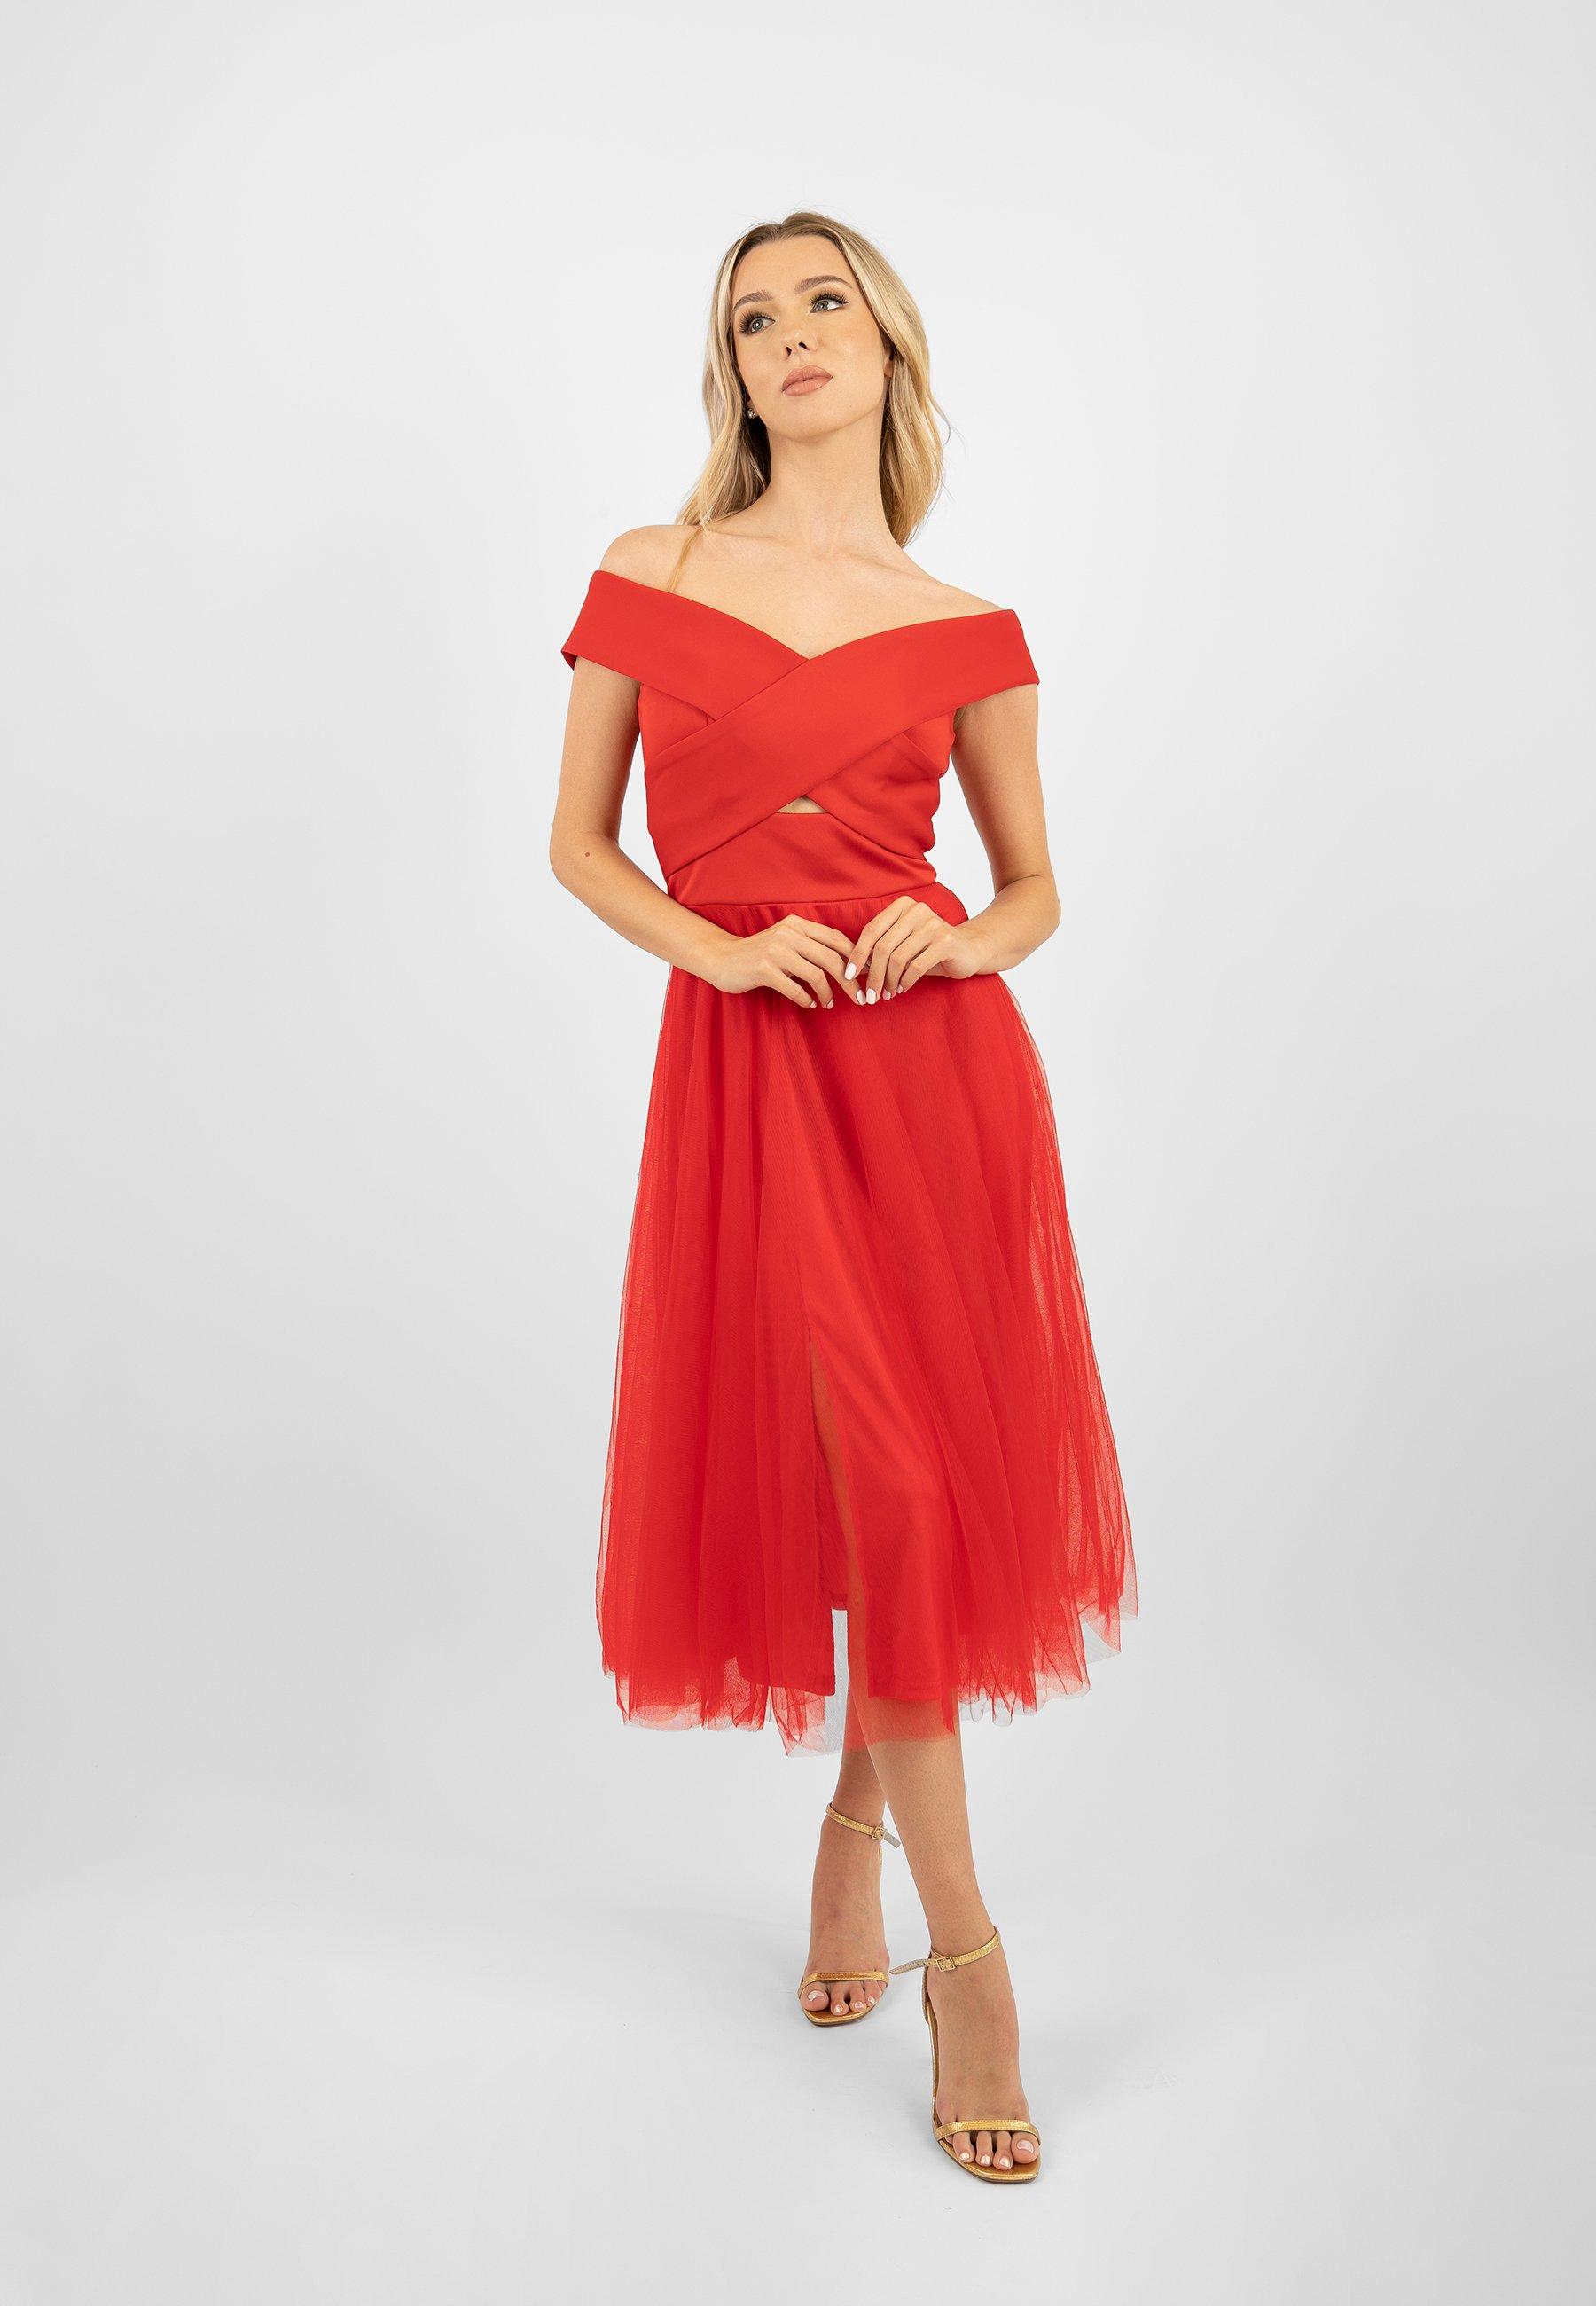 Красное платье-миди из тюля с разрезом Skirt and Stiletto, красный